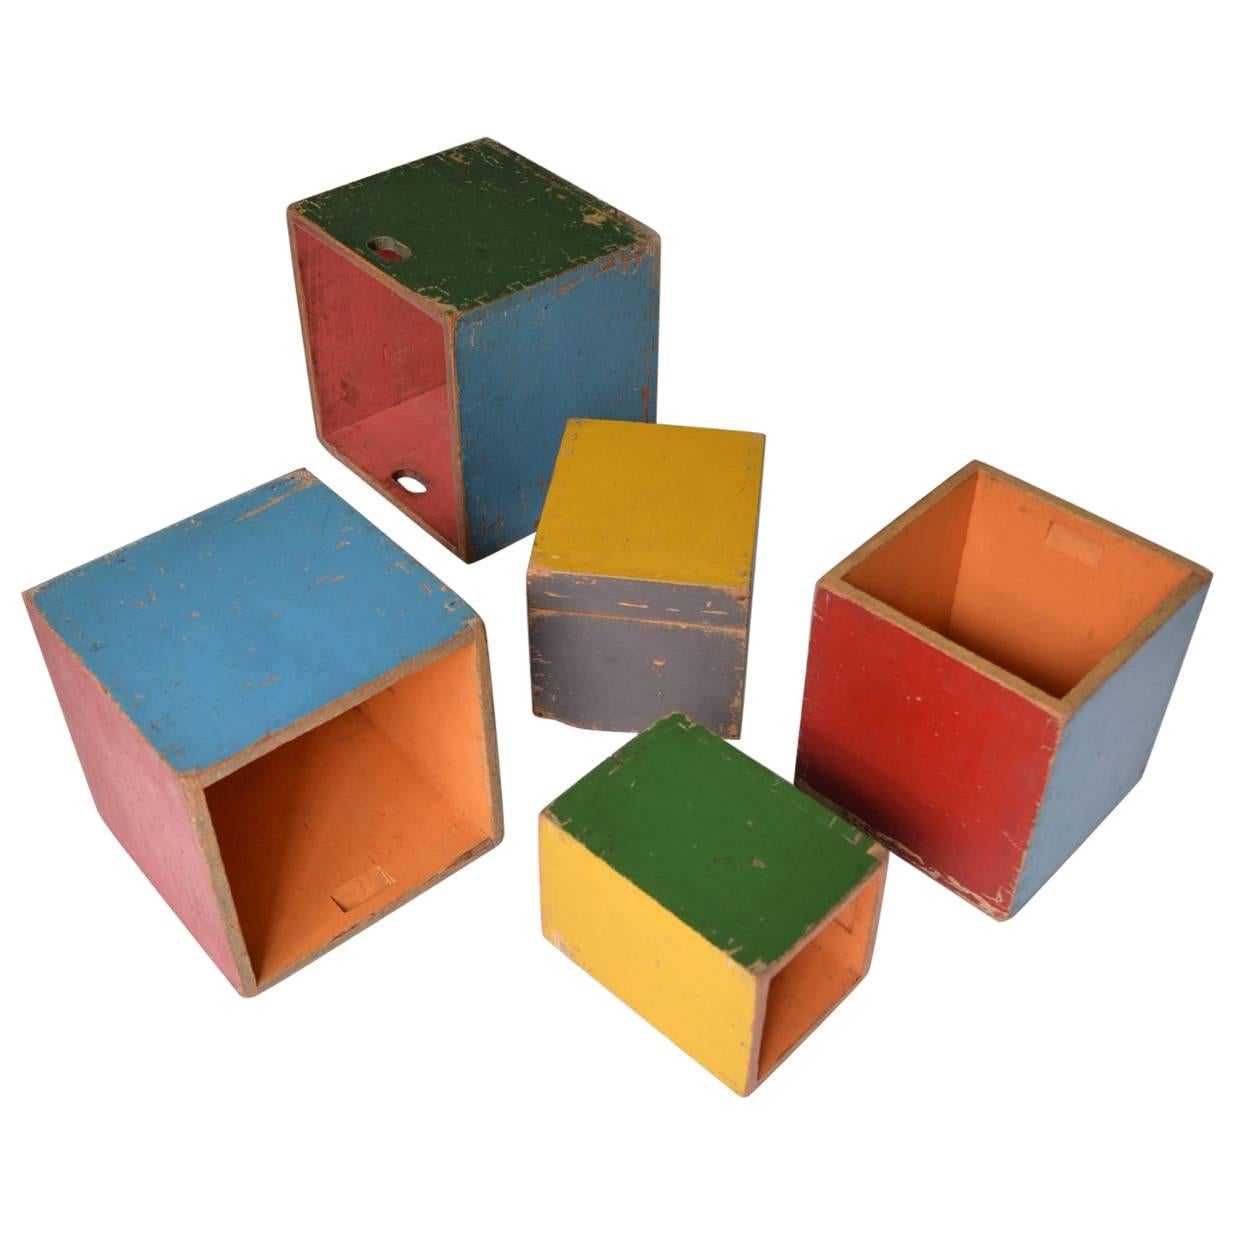 Bauhaus Children's Play Boxes Attributed to Alma Siedhoff-Buscher, circa 1925